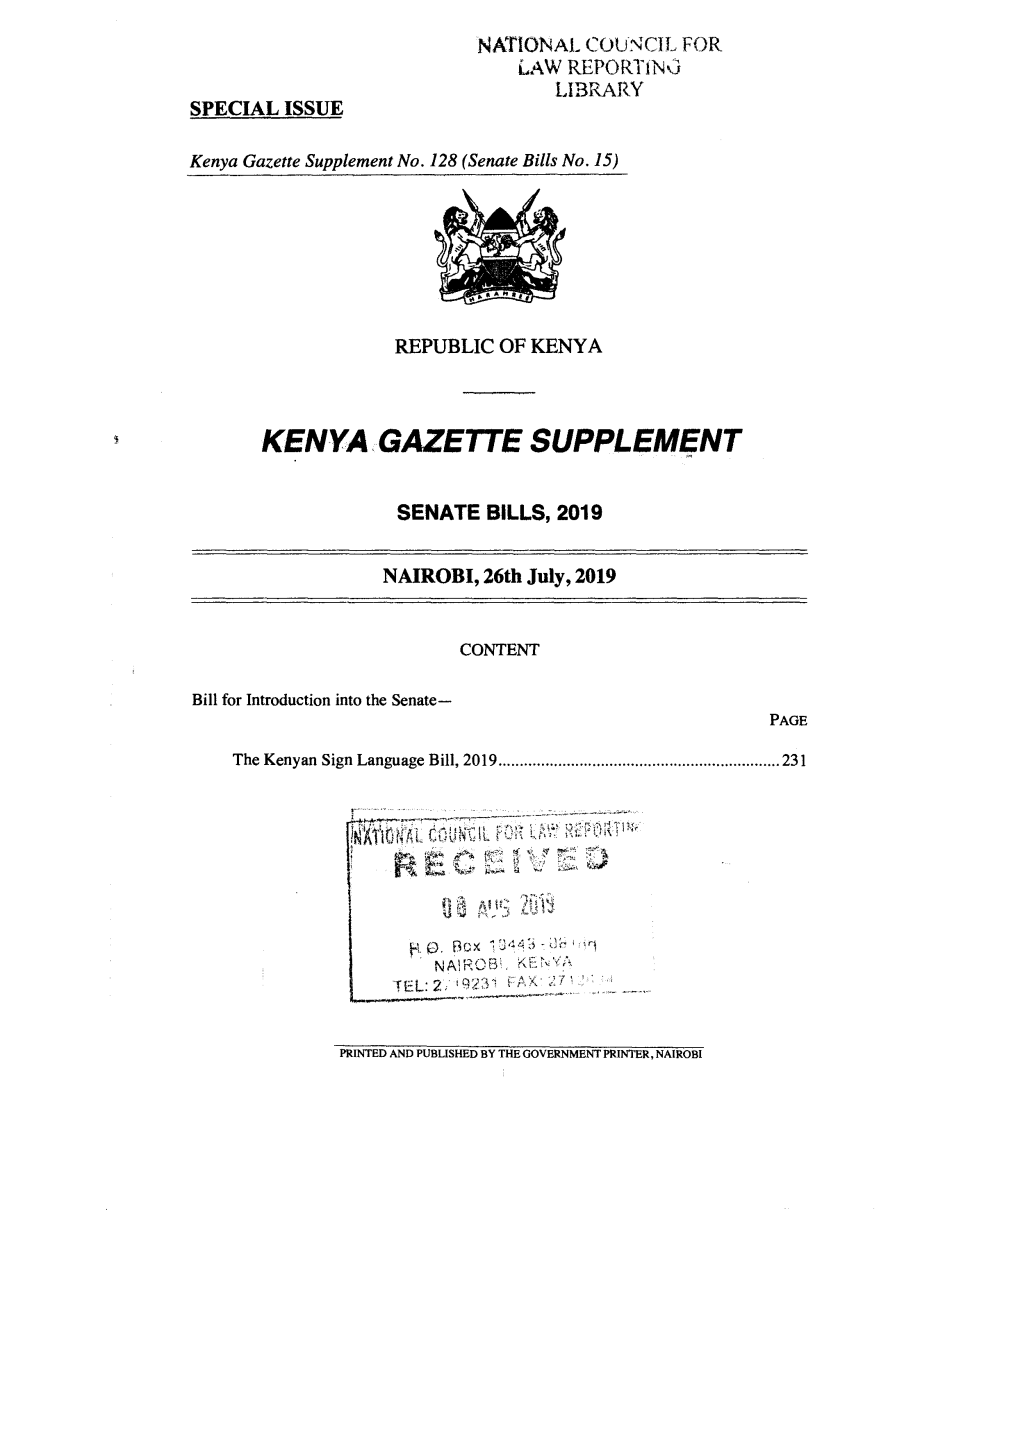 The Kenyan Sign Language Bill, 2019 � 231